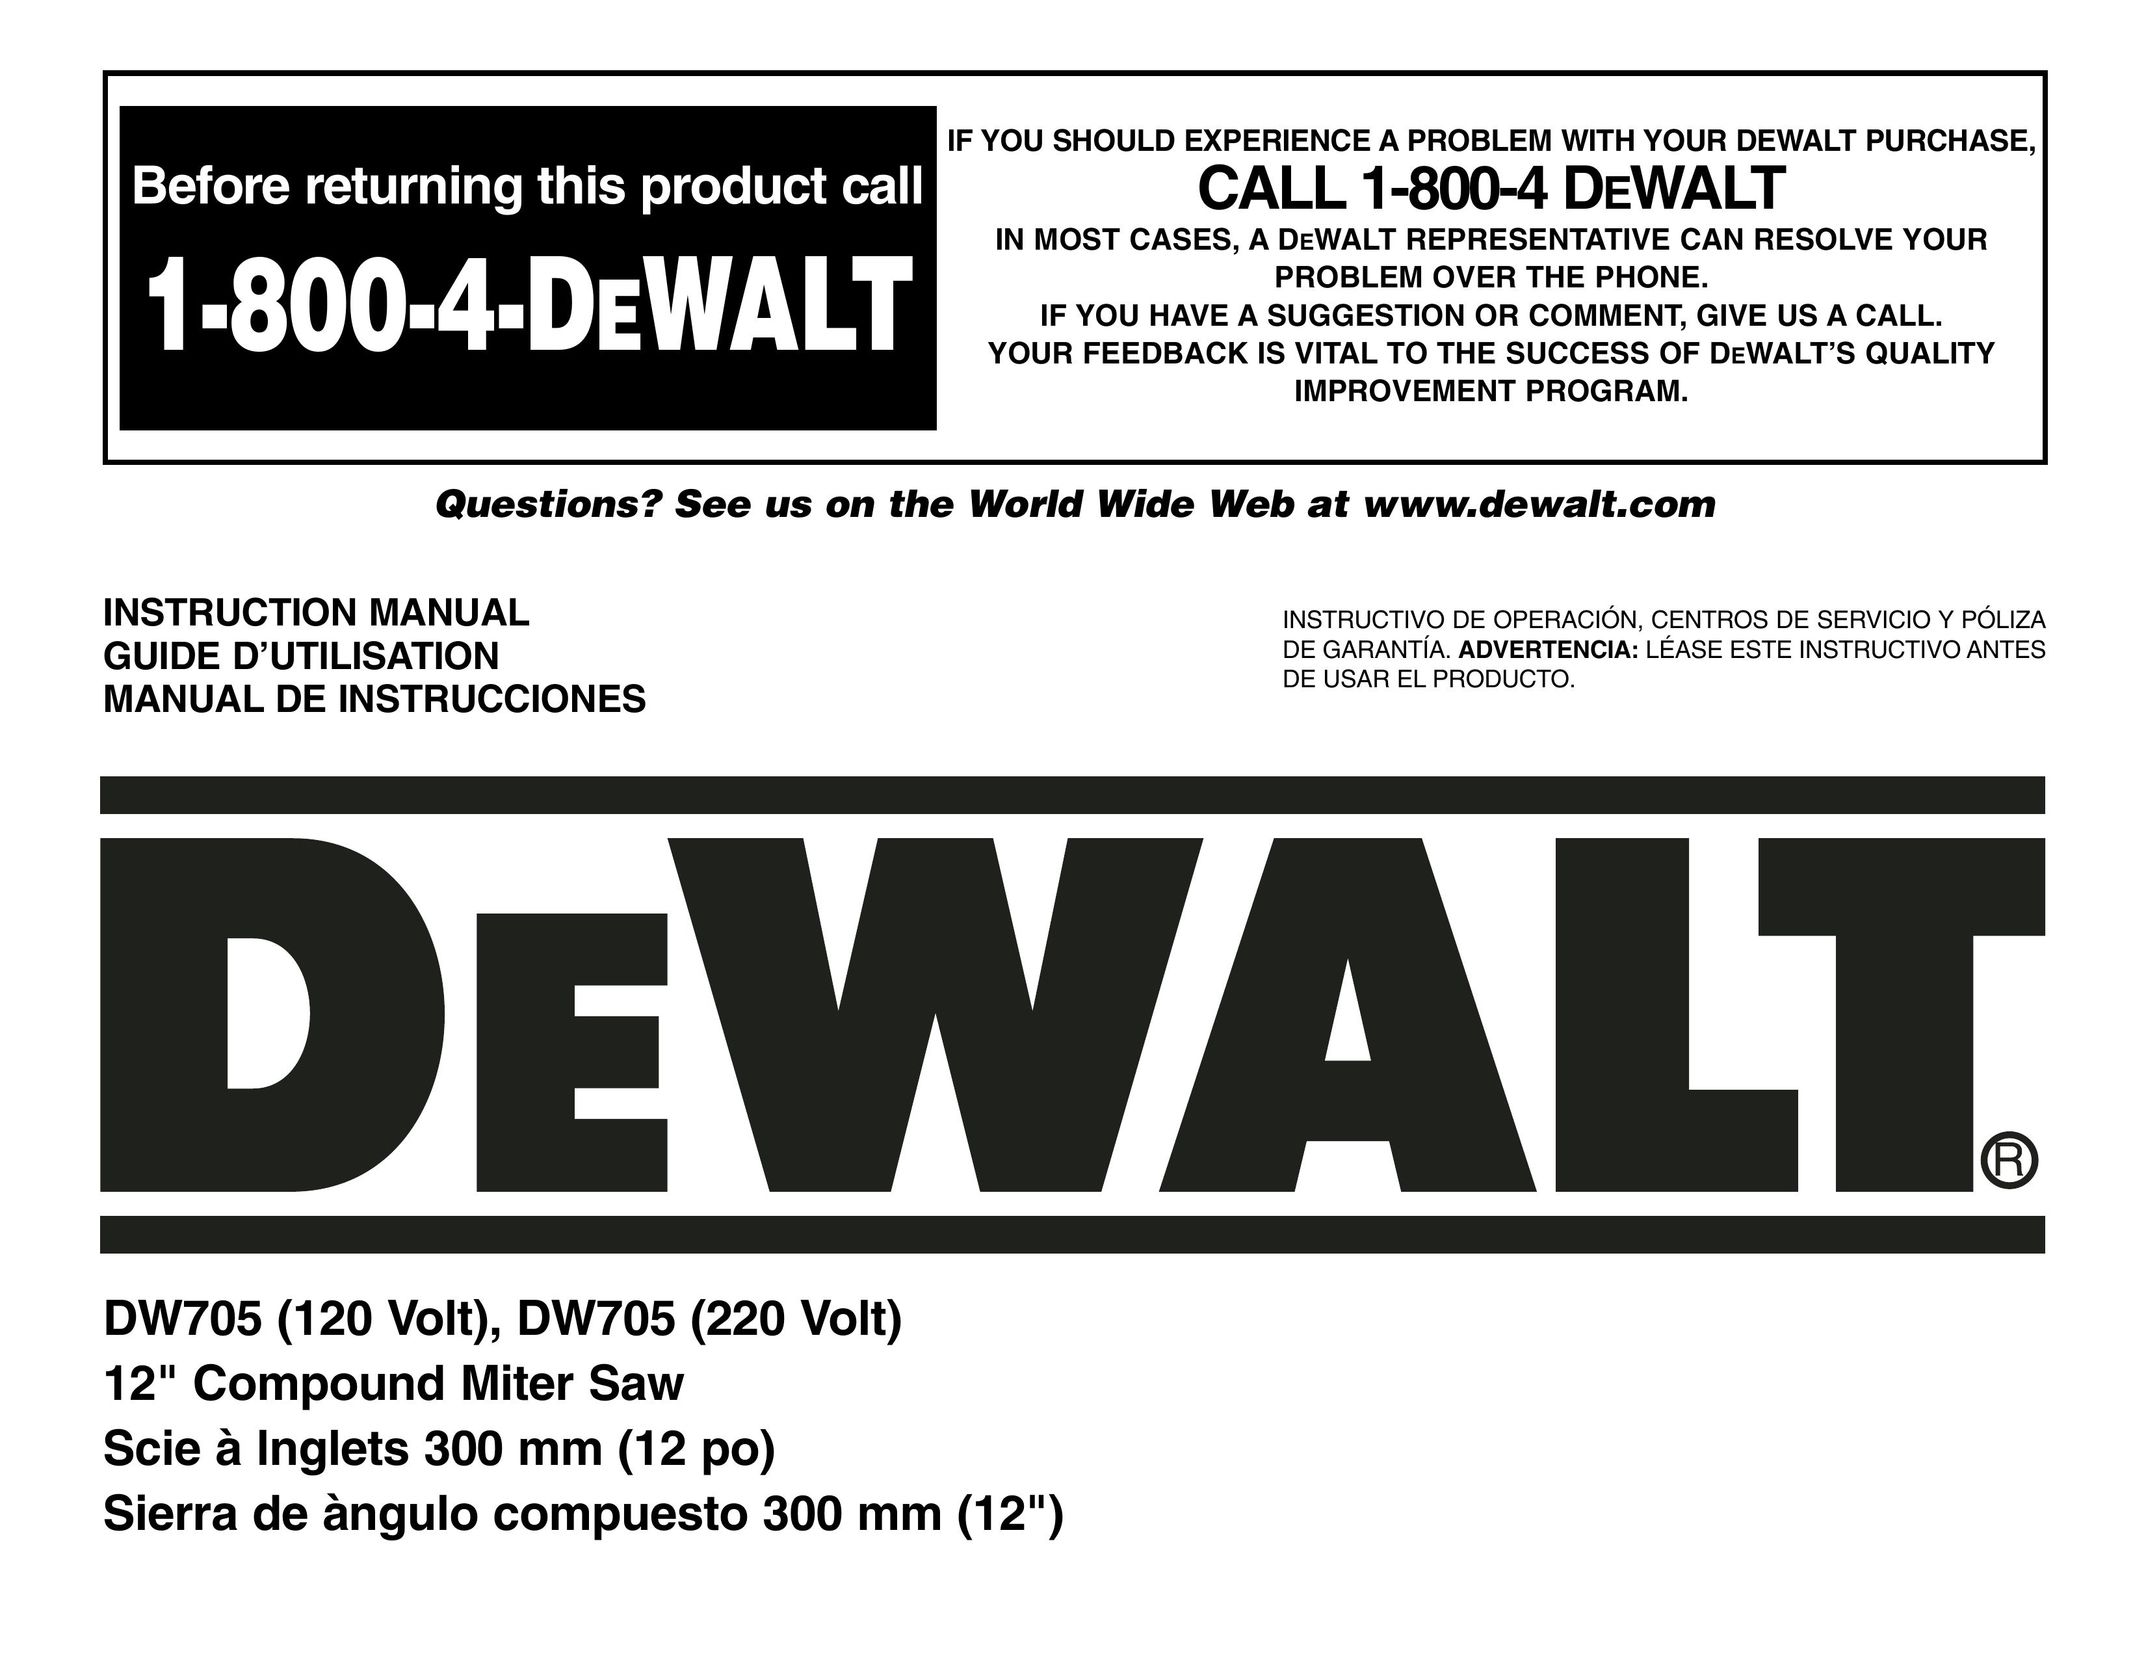 DeWalt DW705 Saw User Manual